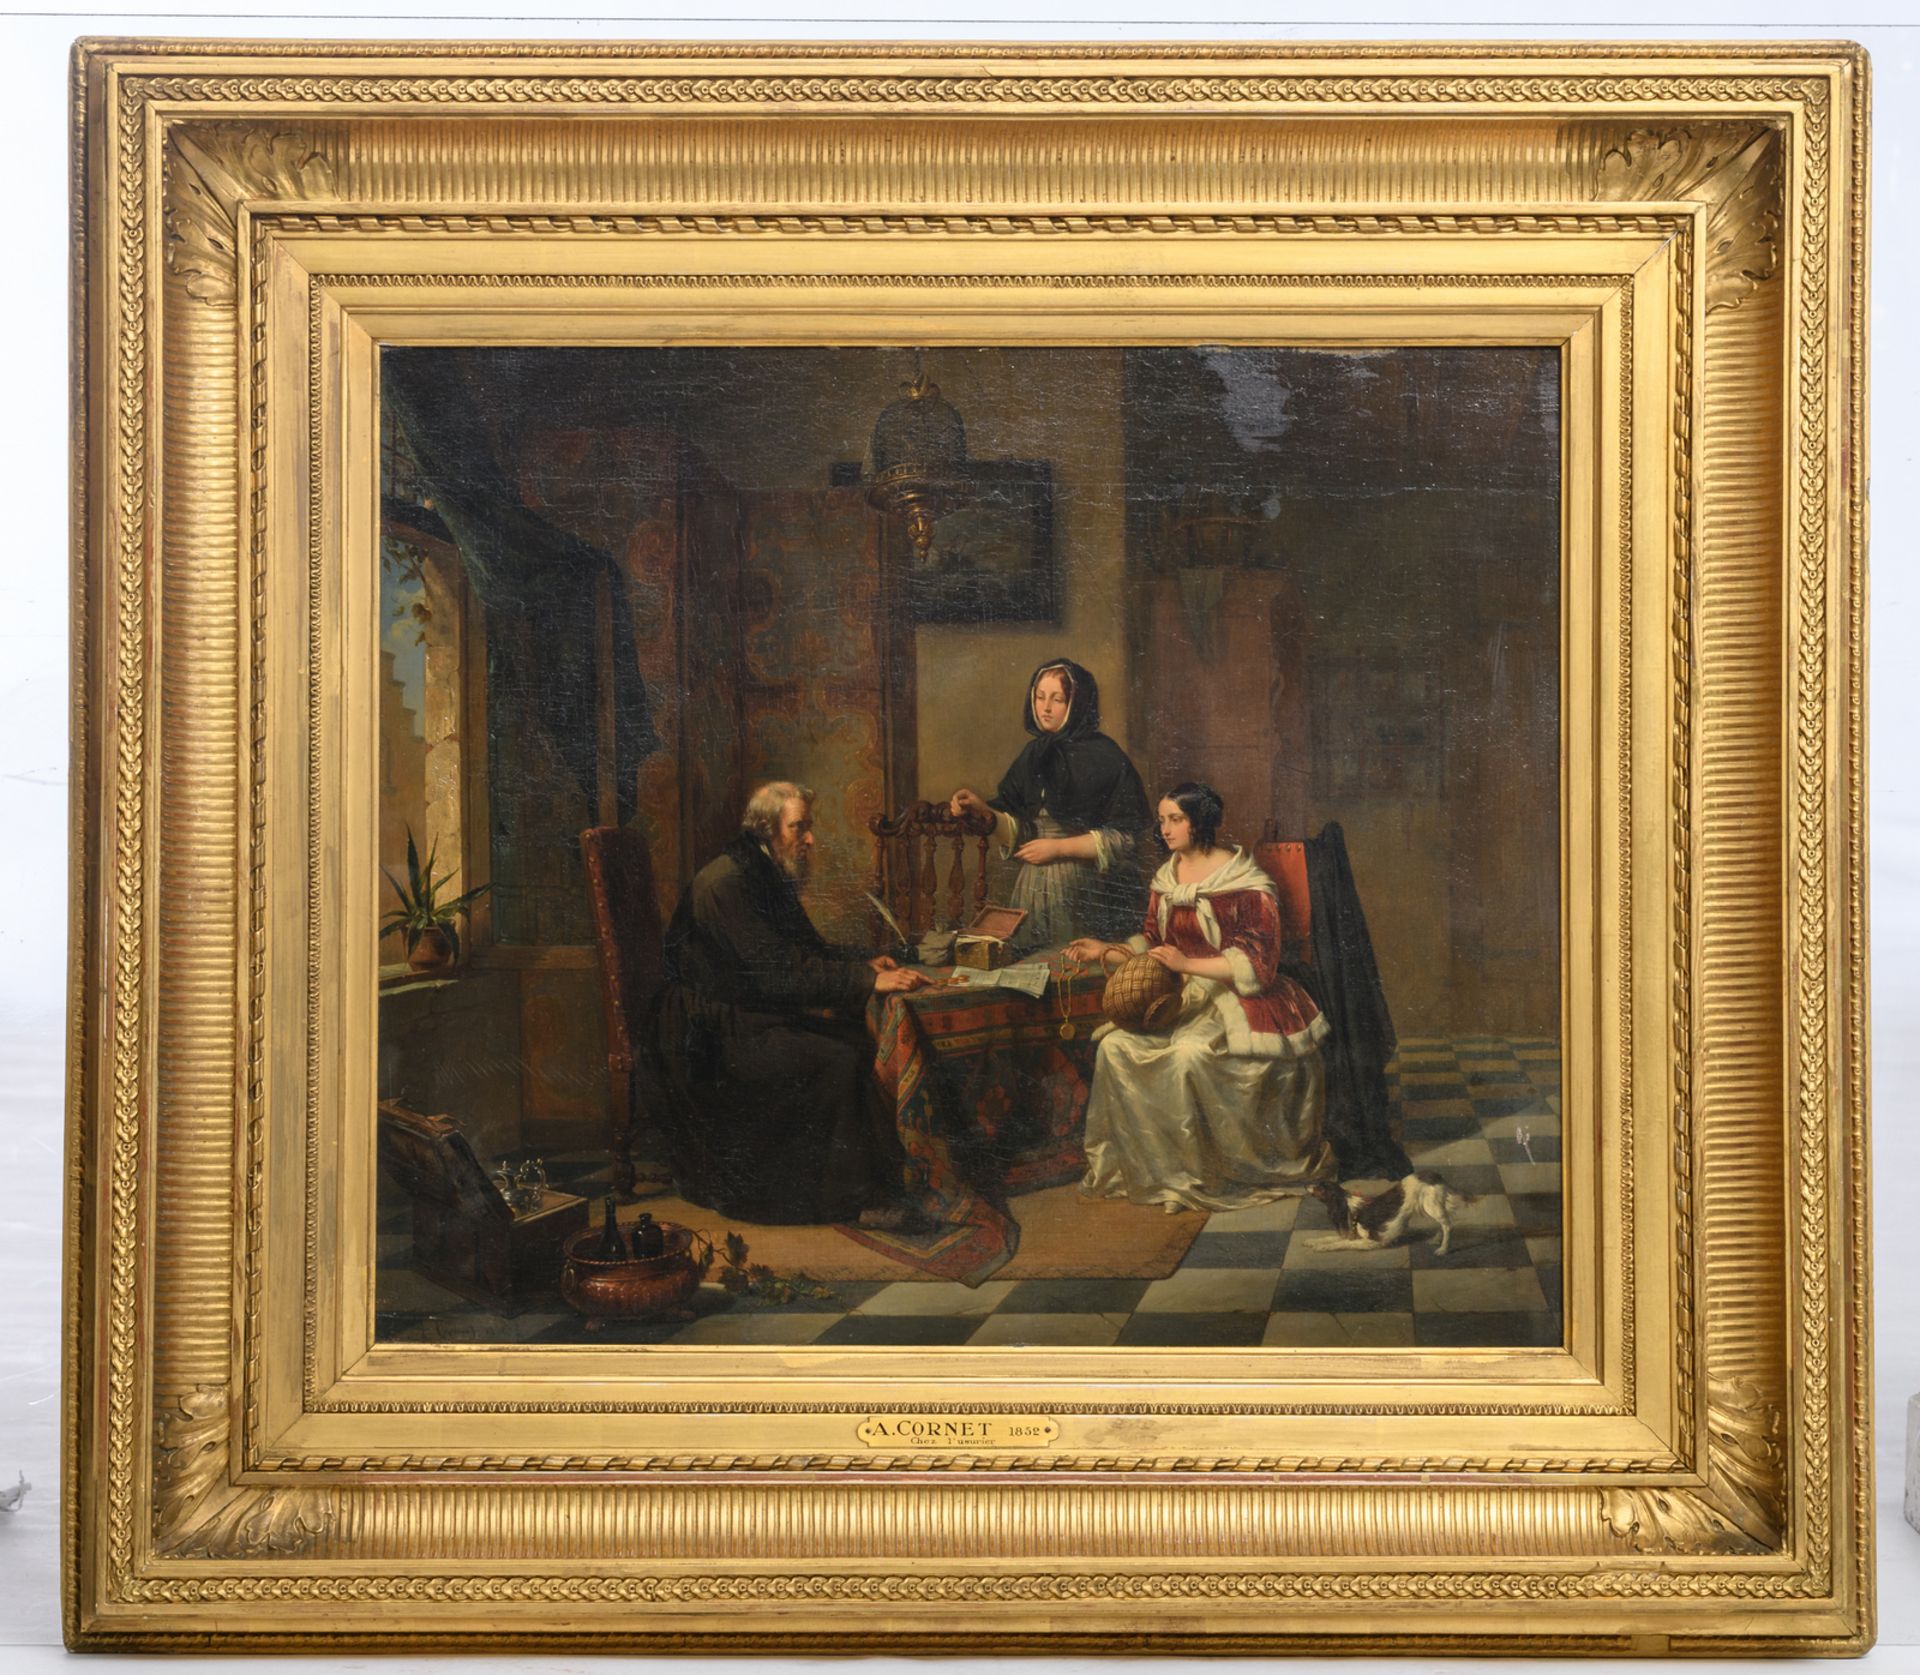 Cornet A., 'Chez l'usurier', oil on panel, dated 1852, 55,5 x 63,5 cm - Bild 2 aus 5